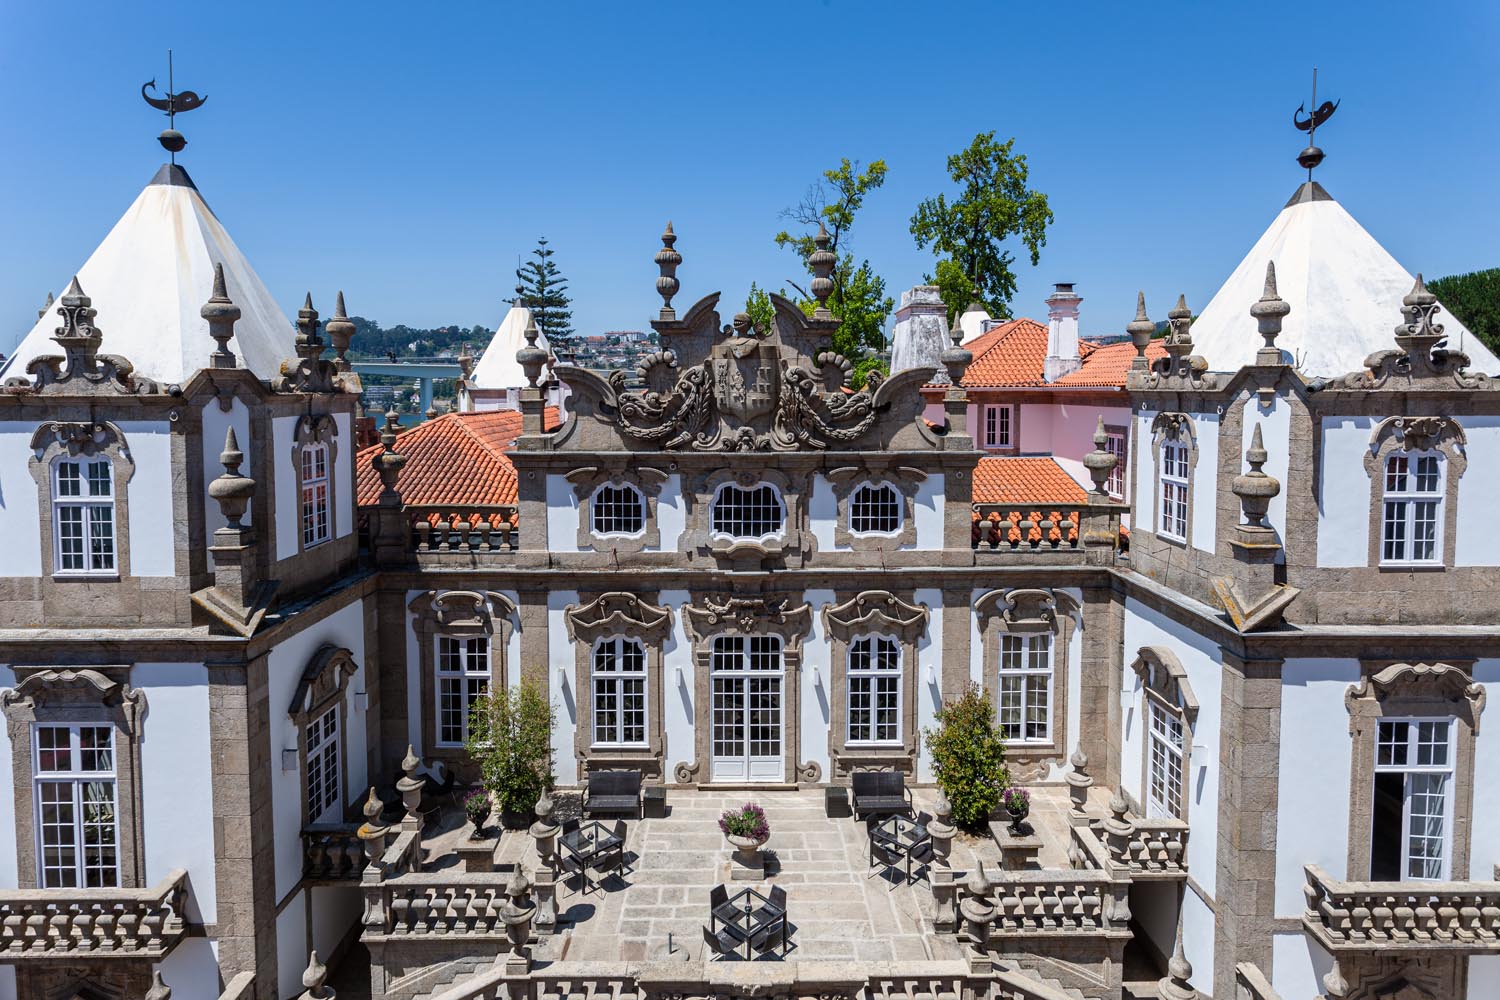 Pestana Palácio do Freixo - Pousadas of Portugal